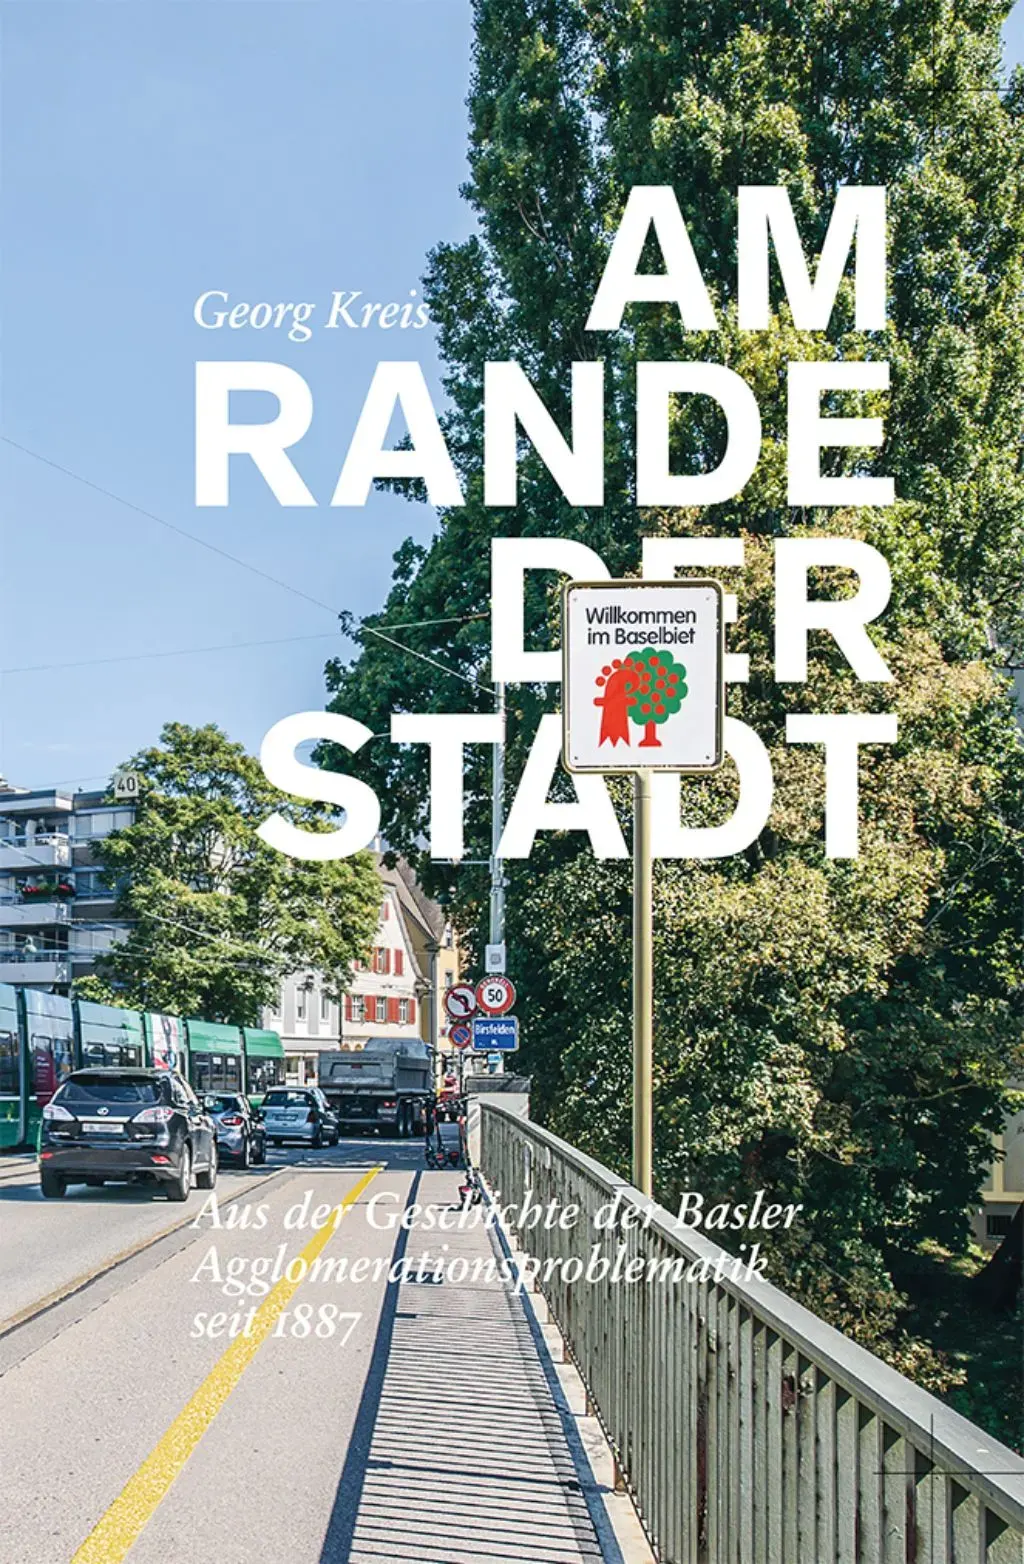 Broschüre: Die Titelseite von "Am Rande der Stadt" von Georg Kreis